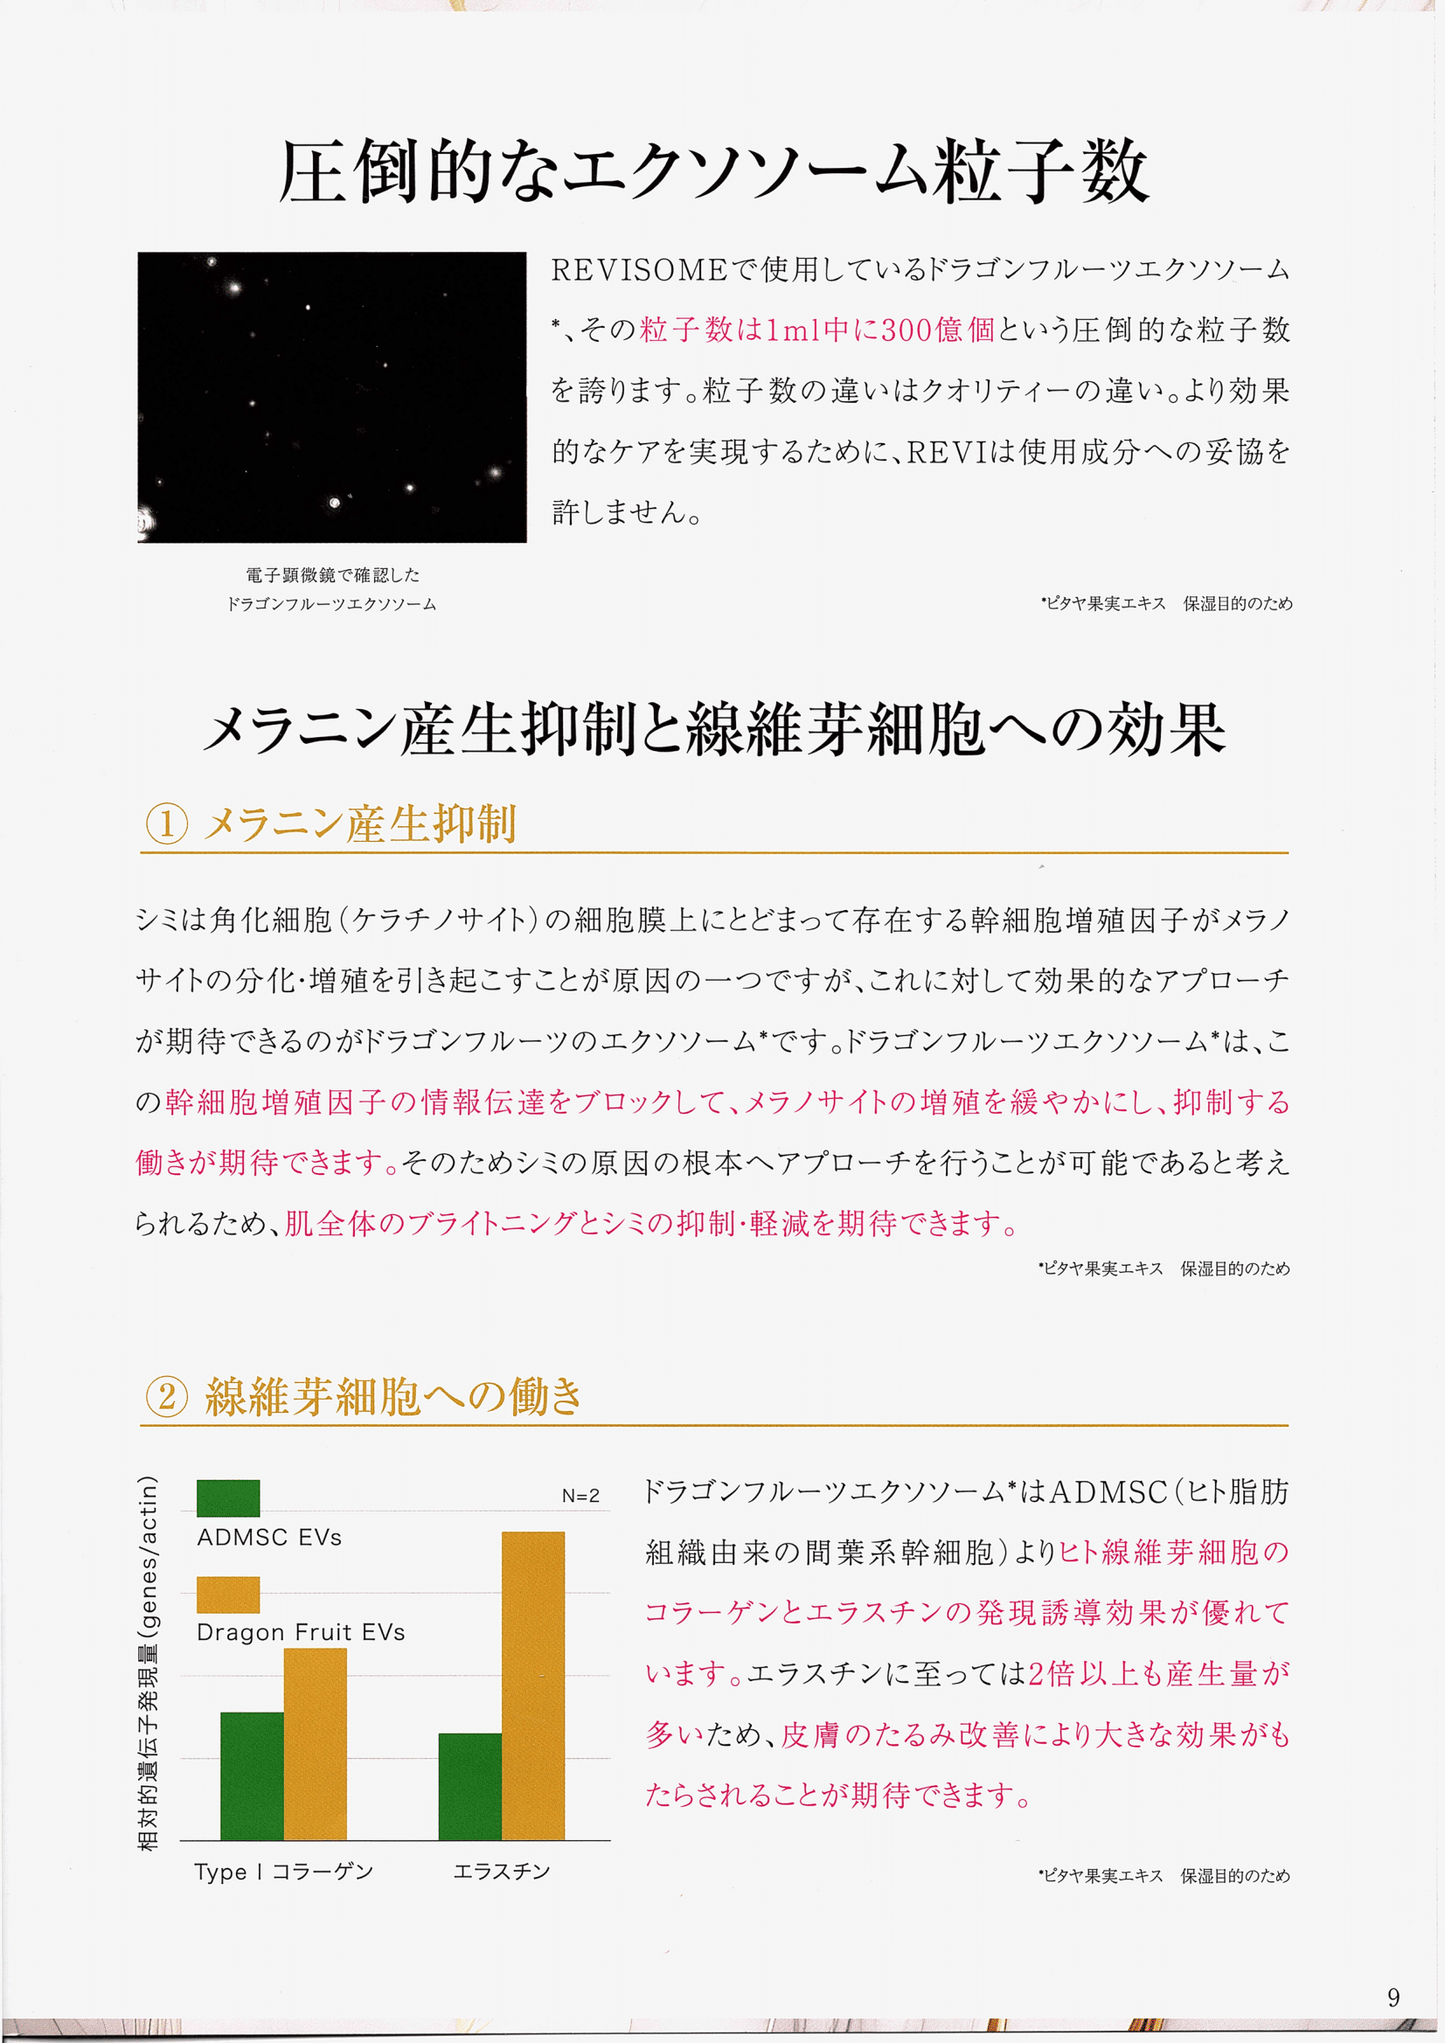 【セール】エクソソームセット14300円分プレゼントRevi